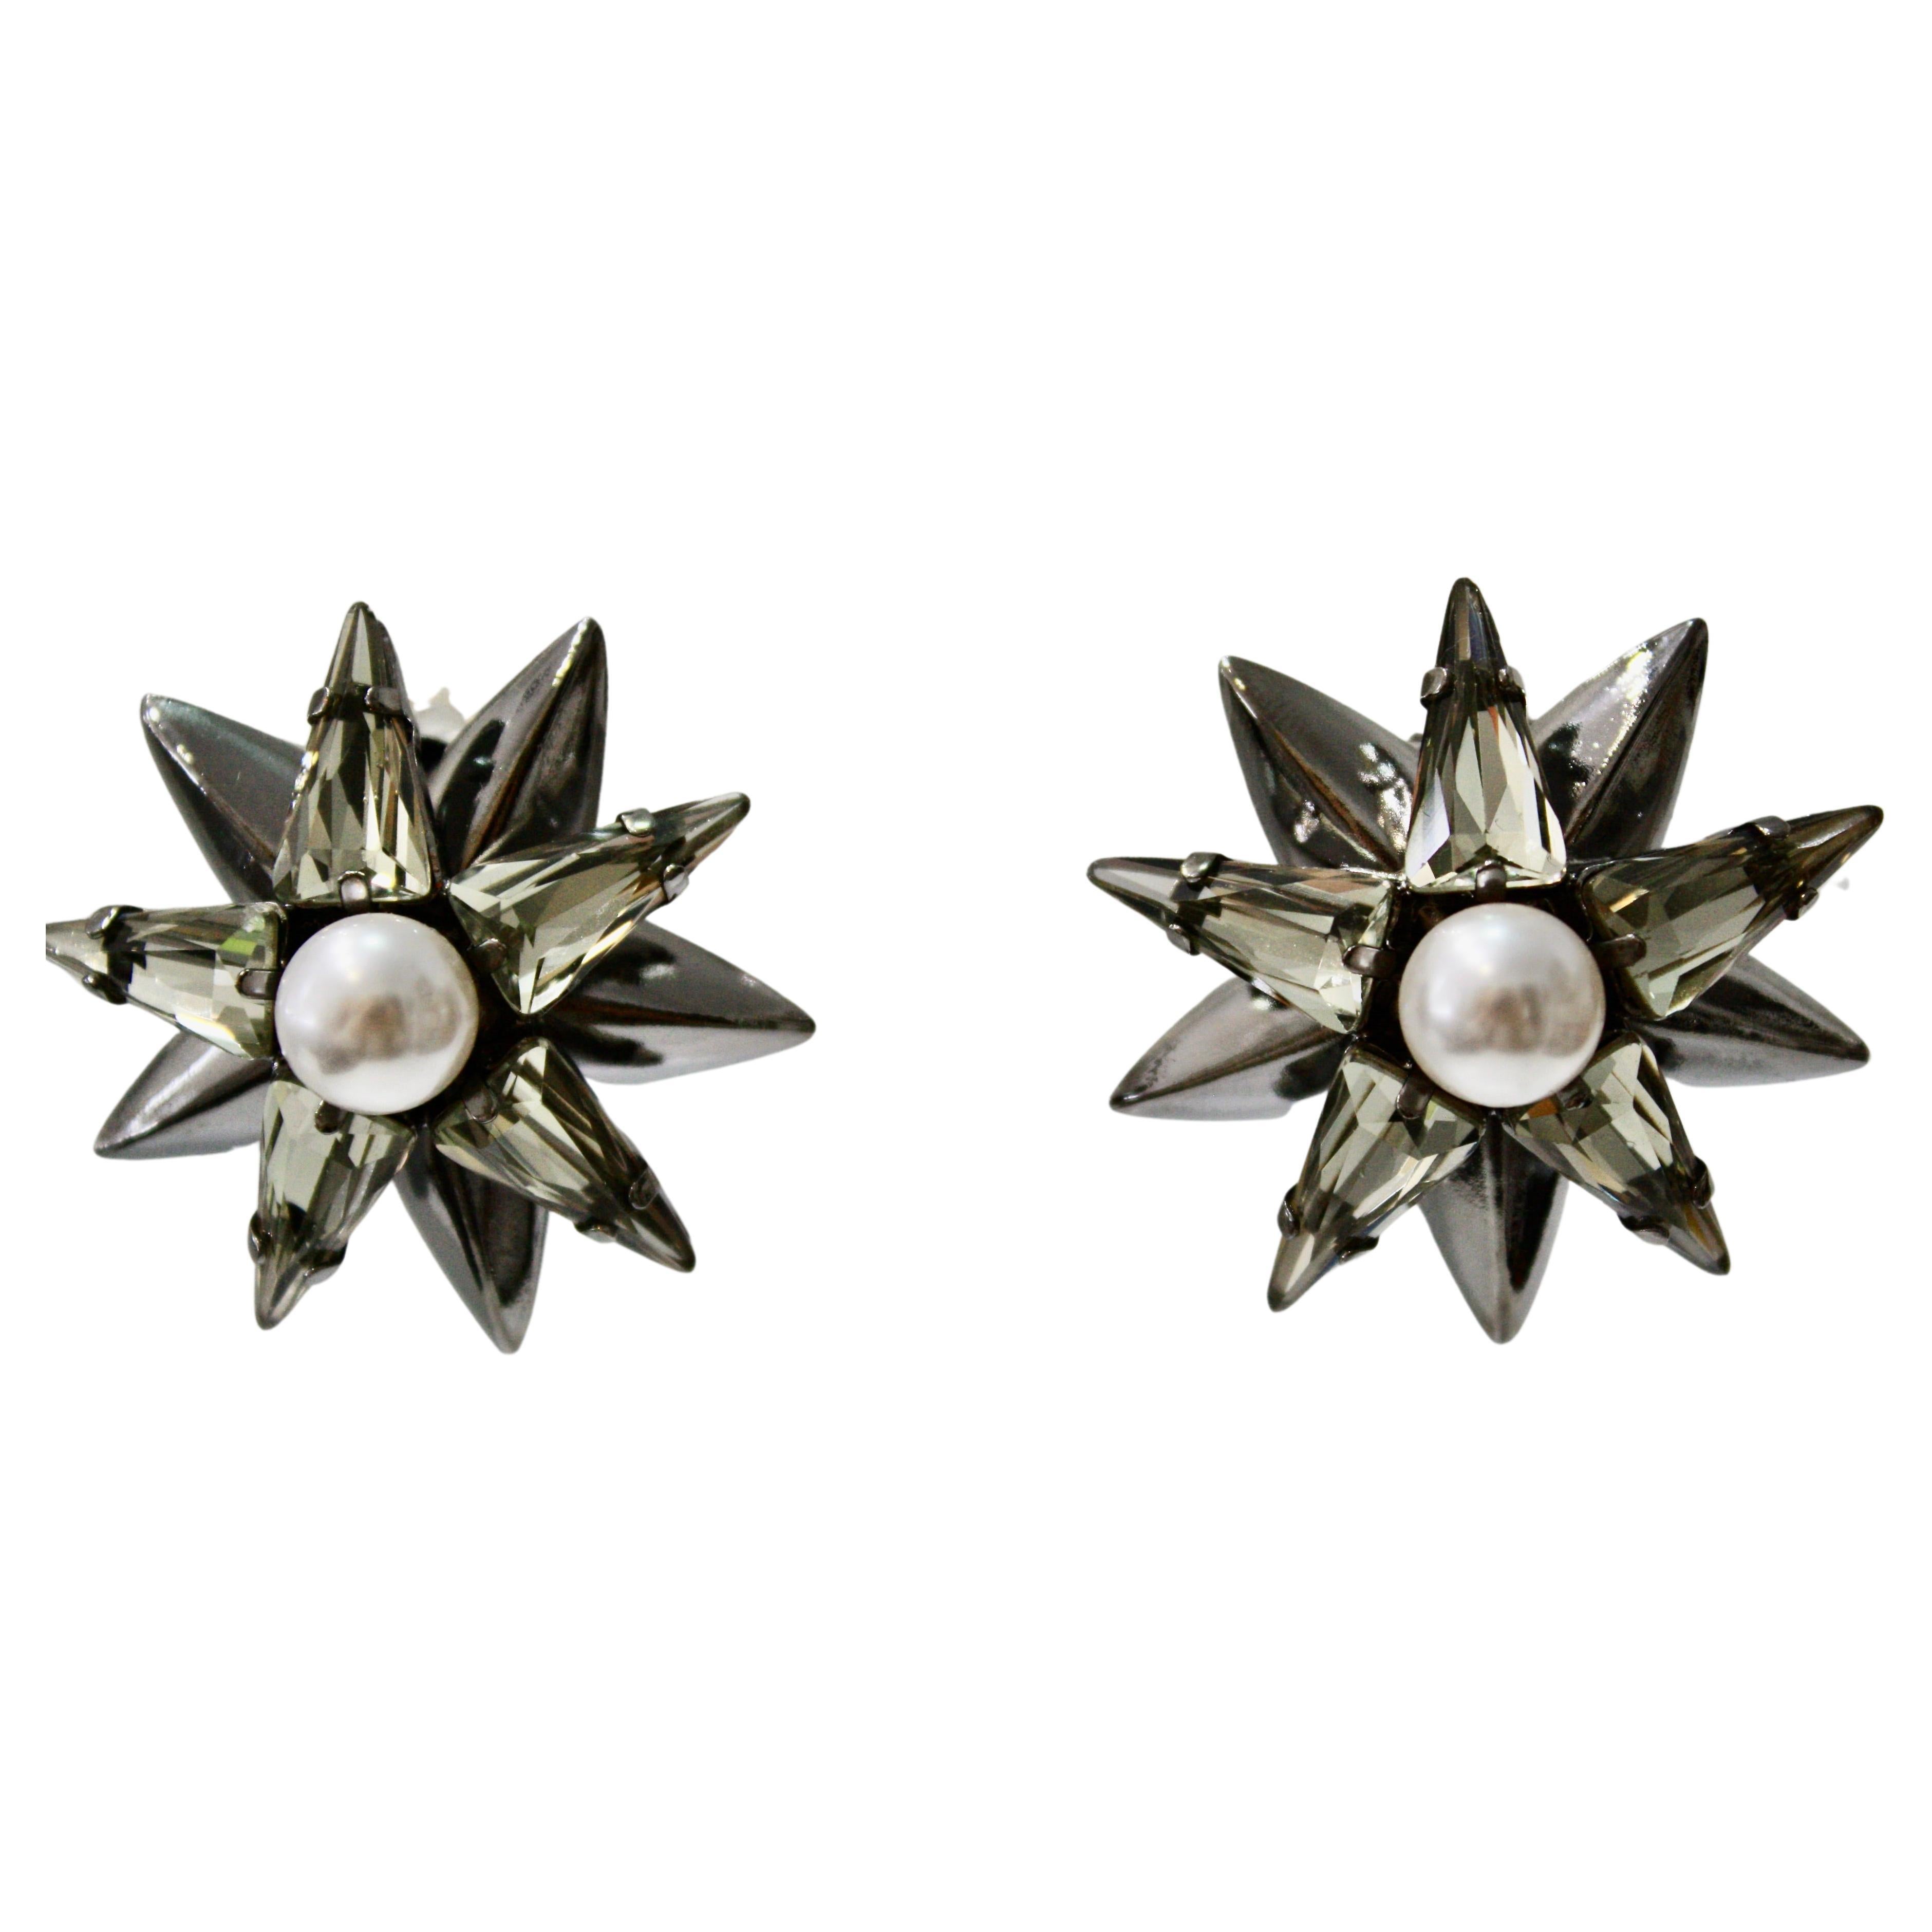 Philippe Ferrandis Star Flower Earrings 